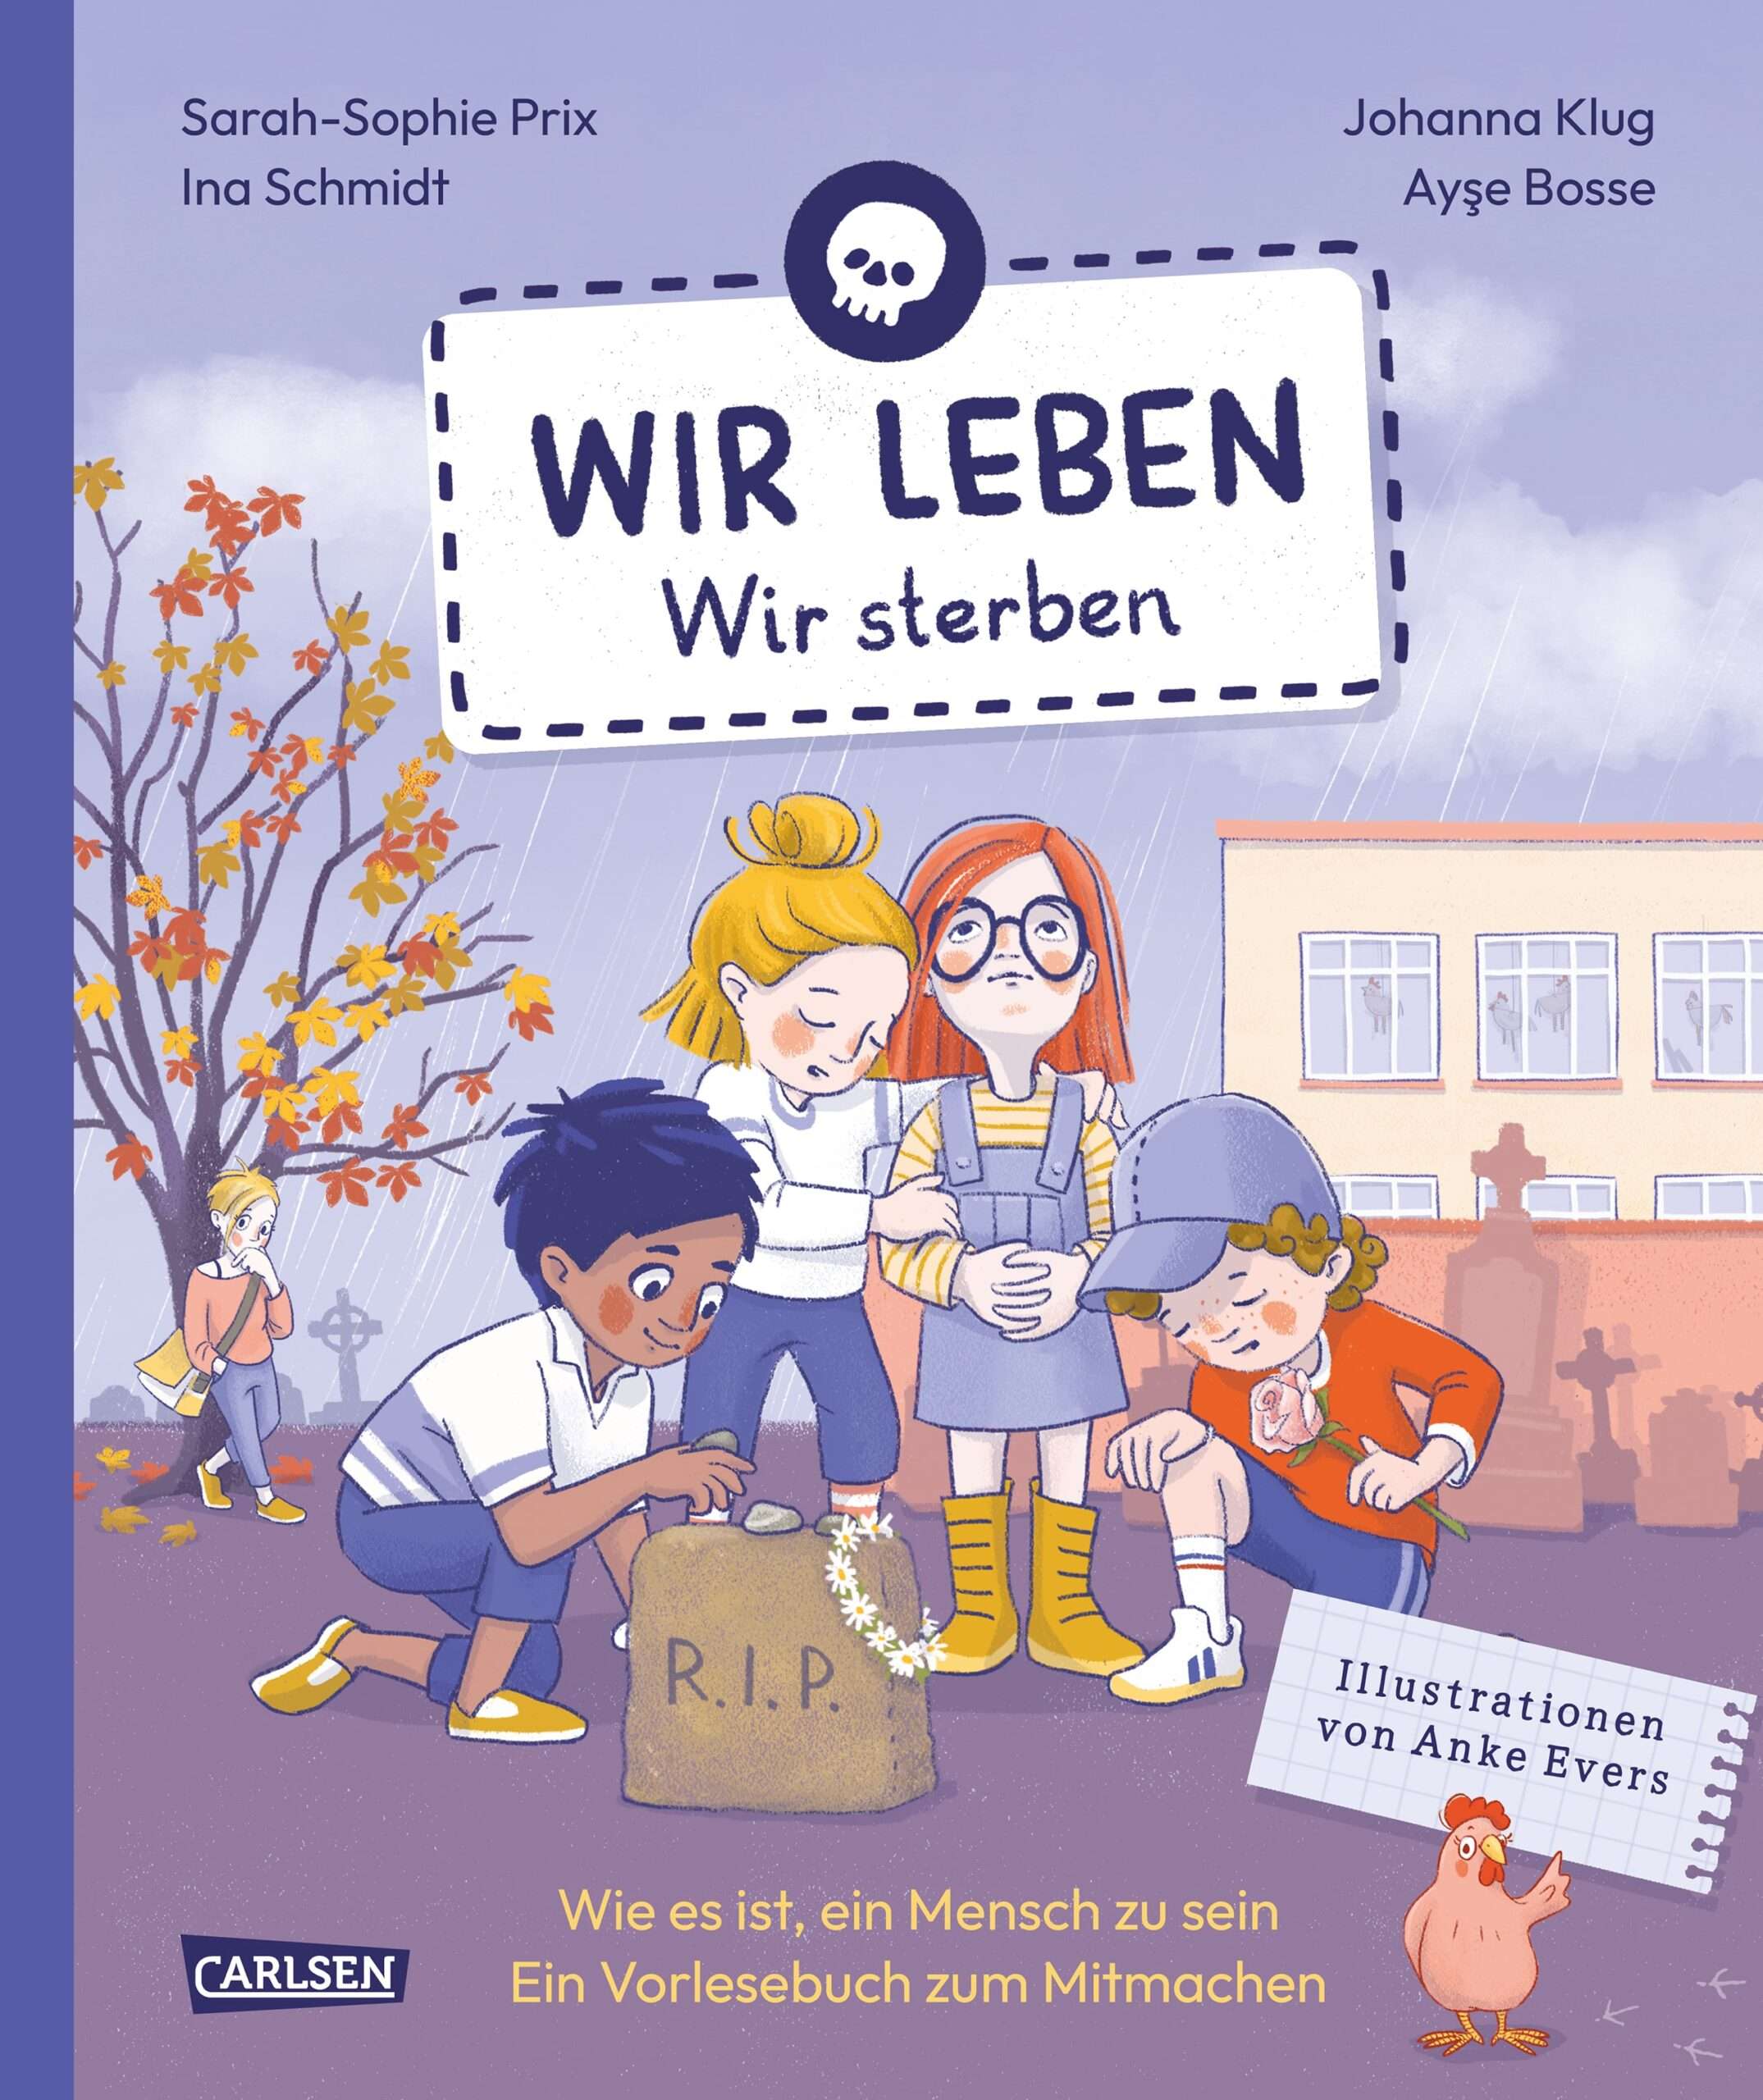 Buchreihe "Wir leben": Band 3: Wir sterben (Cover)